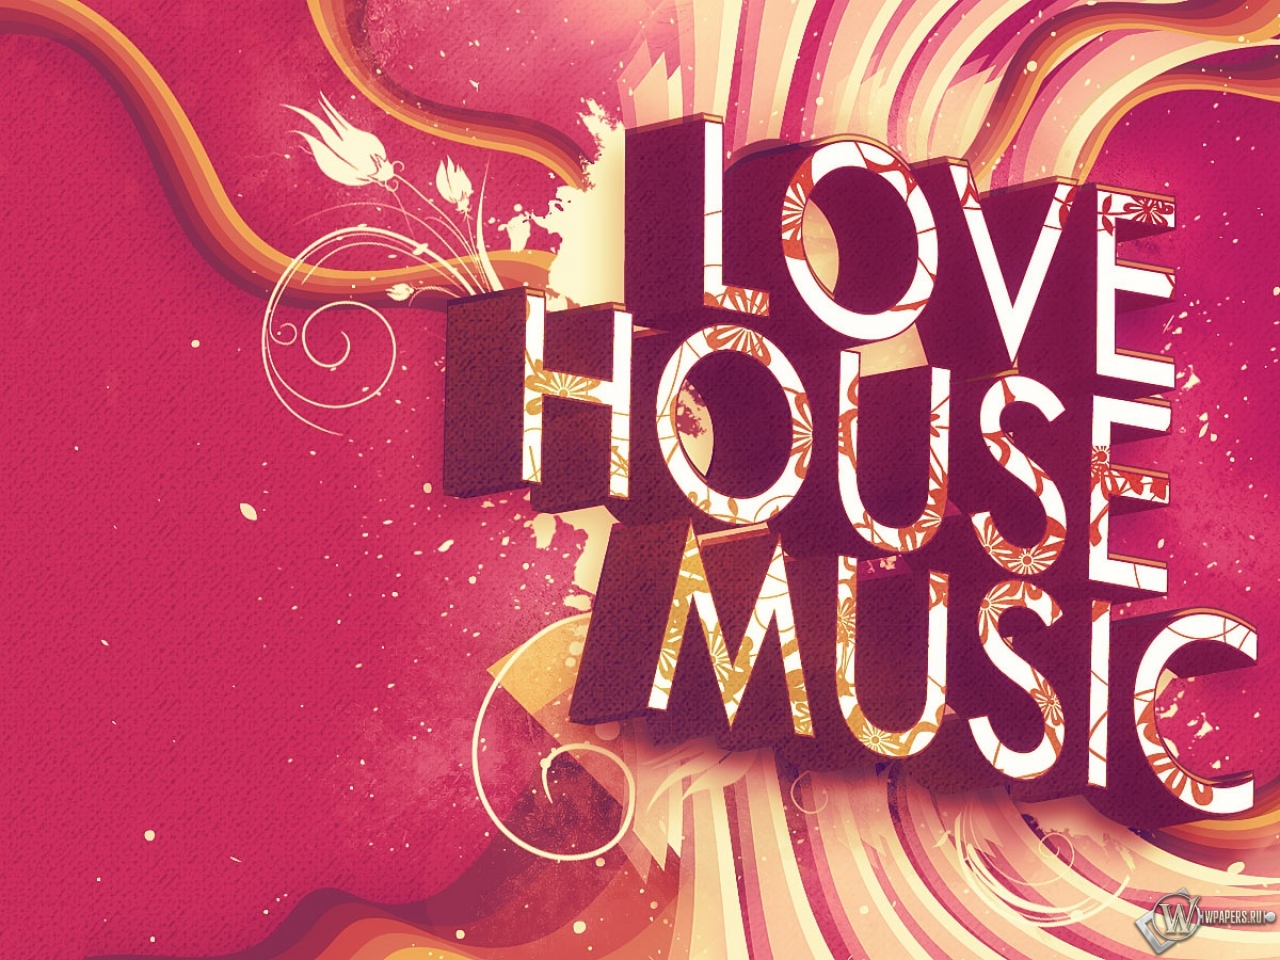 LOVE HOUSE MUSIC 1280x960